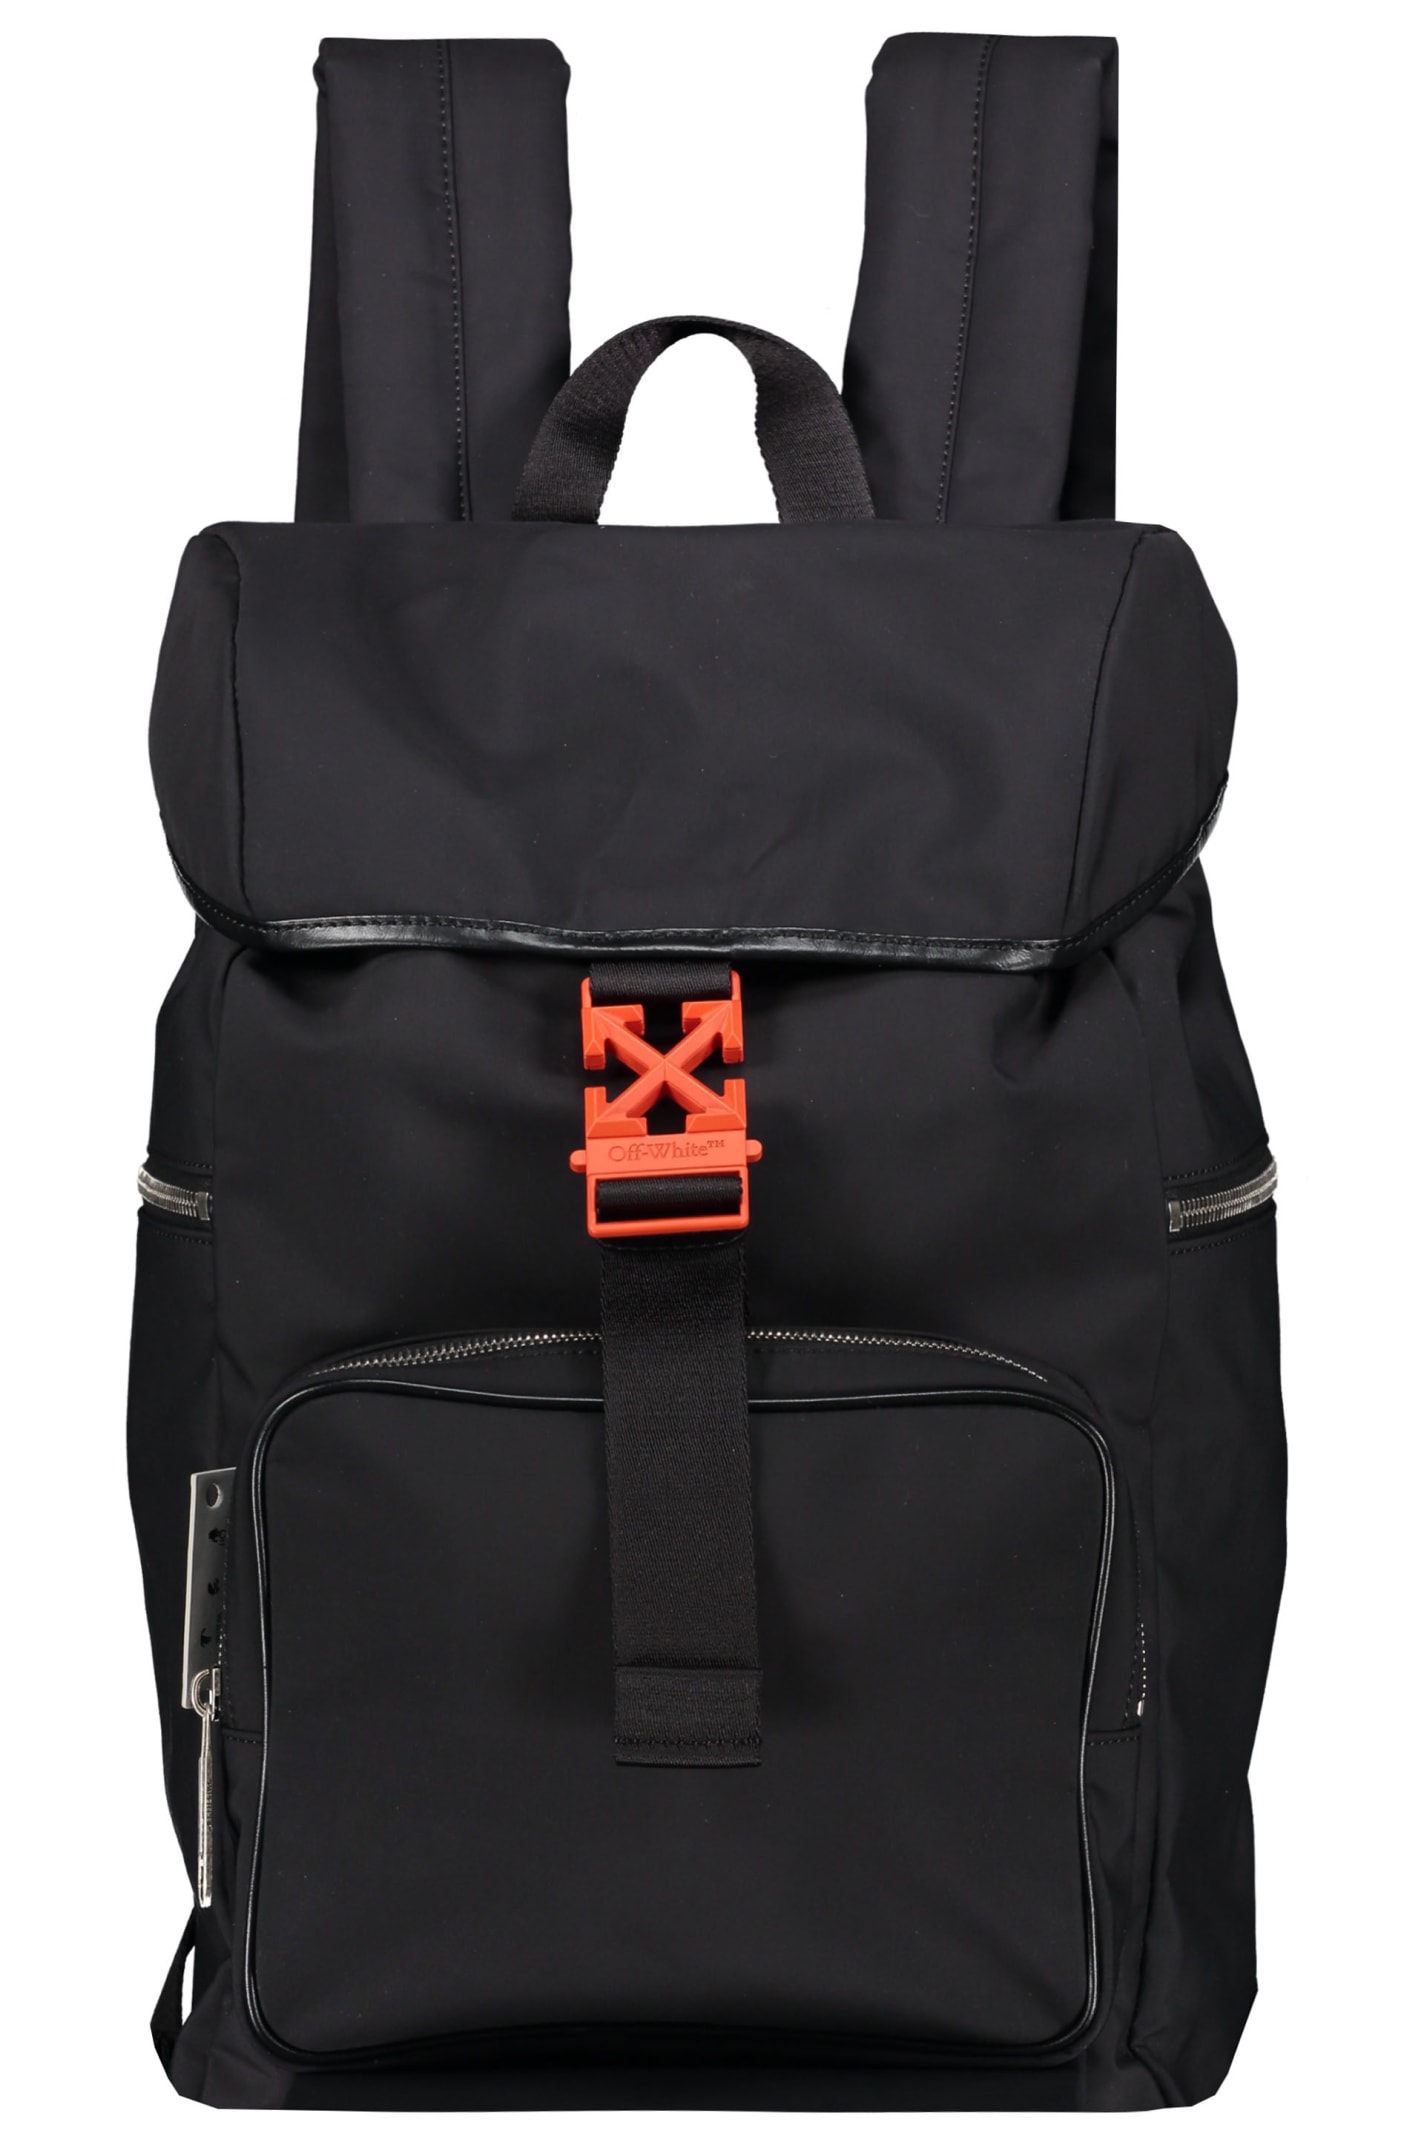 OFF-WHITE Arrow Nylon Backpack Black/White